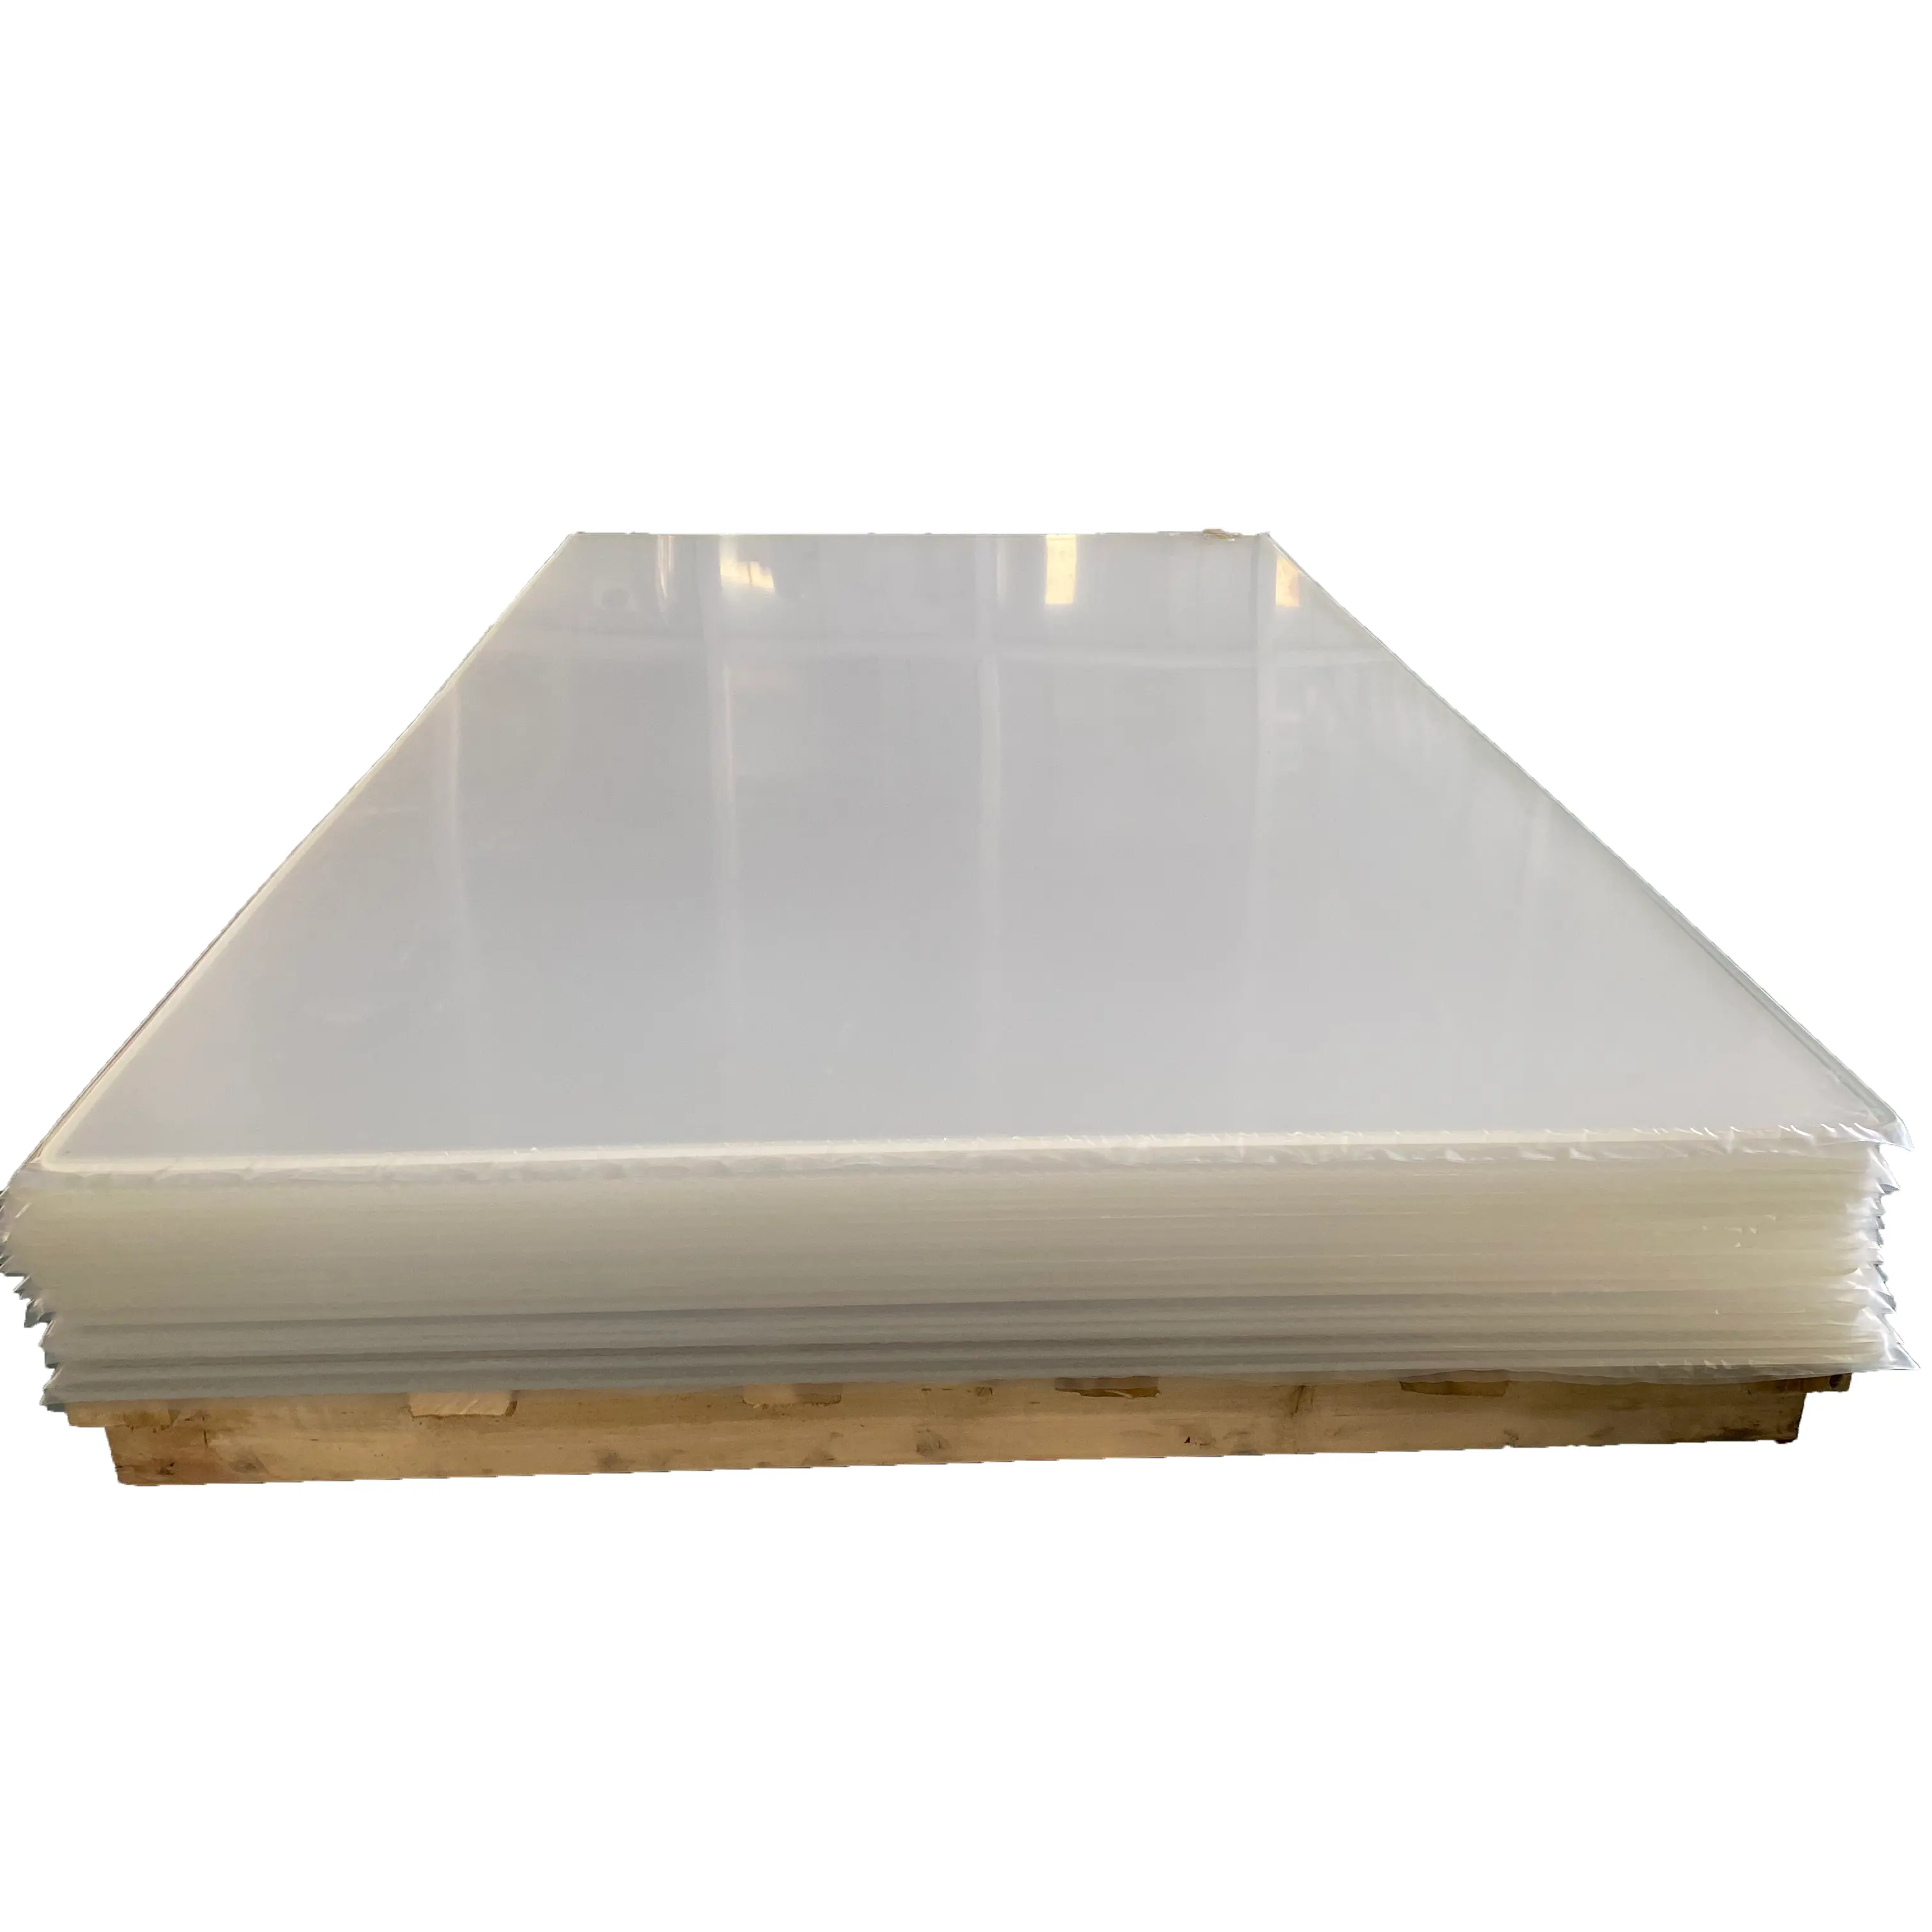 KINHO Fabricante Fornecedor Folha De Plástico Acrílico Transparente Branco 6mm 5mm 4mm 3mm 1220*2440mm Folha De Mica Transparente